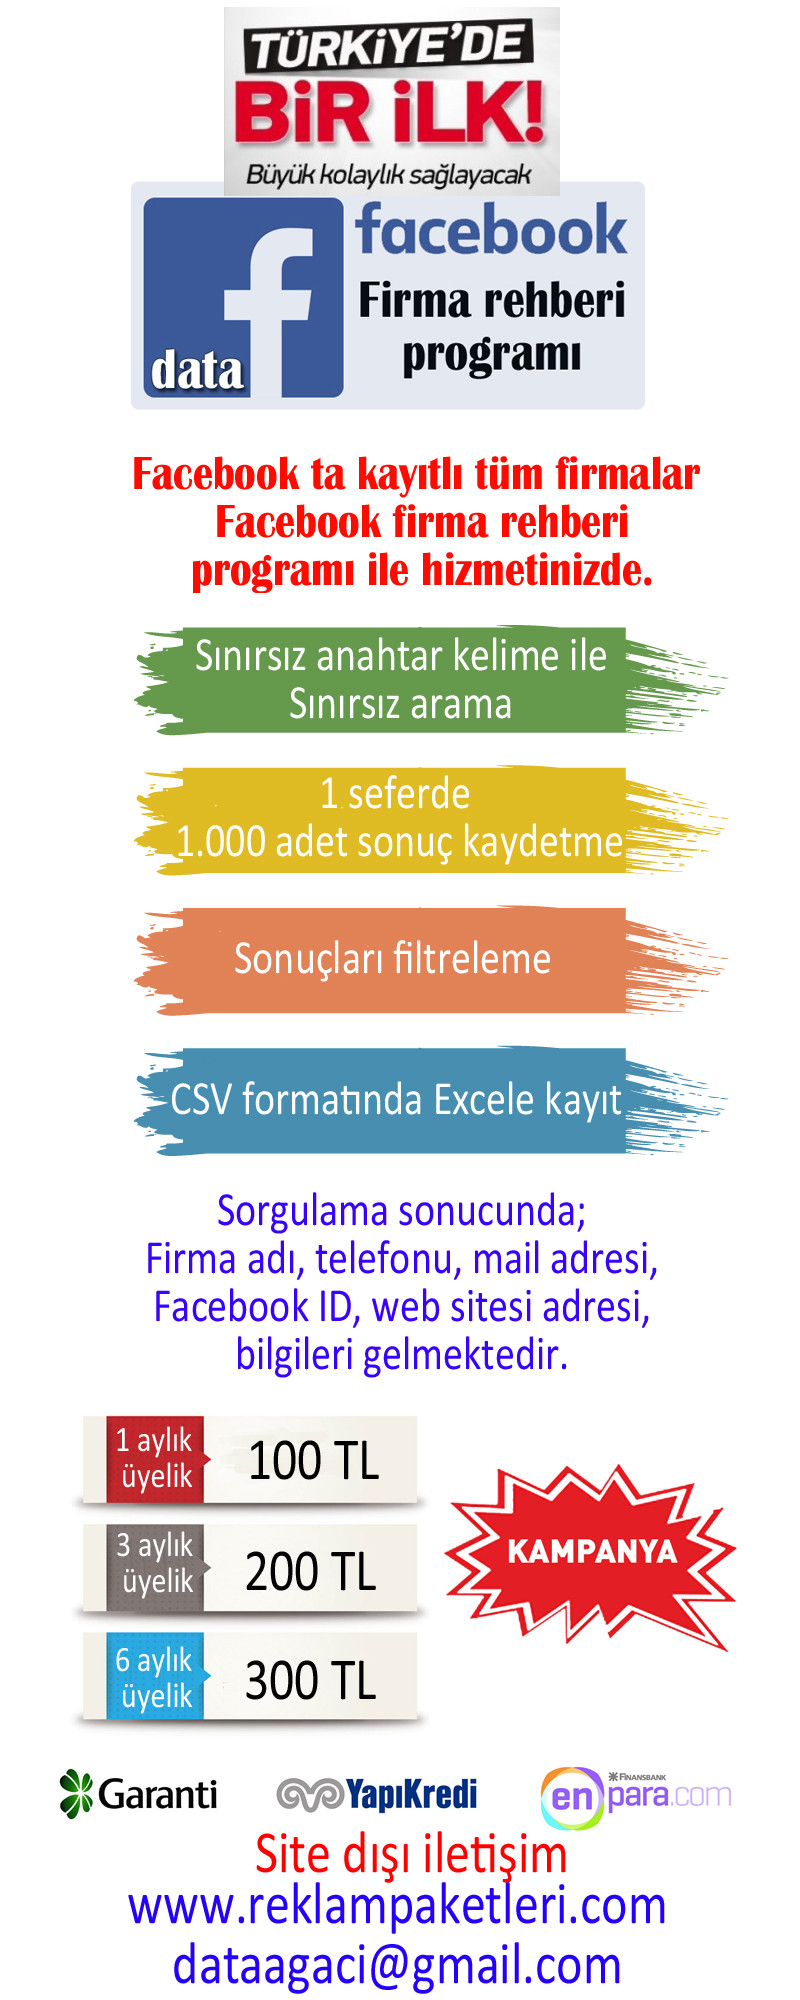  Facebook FİRMA REHBERİ programı. Türkiye'de ilk!!!